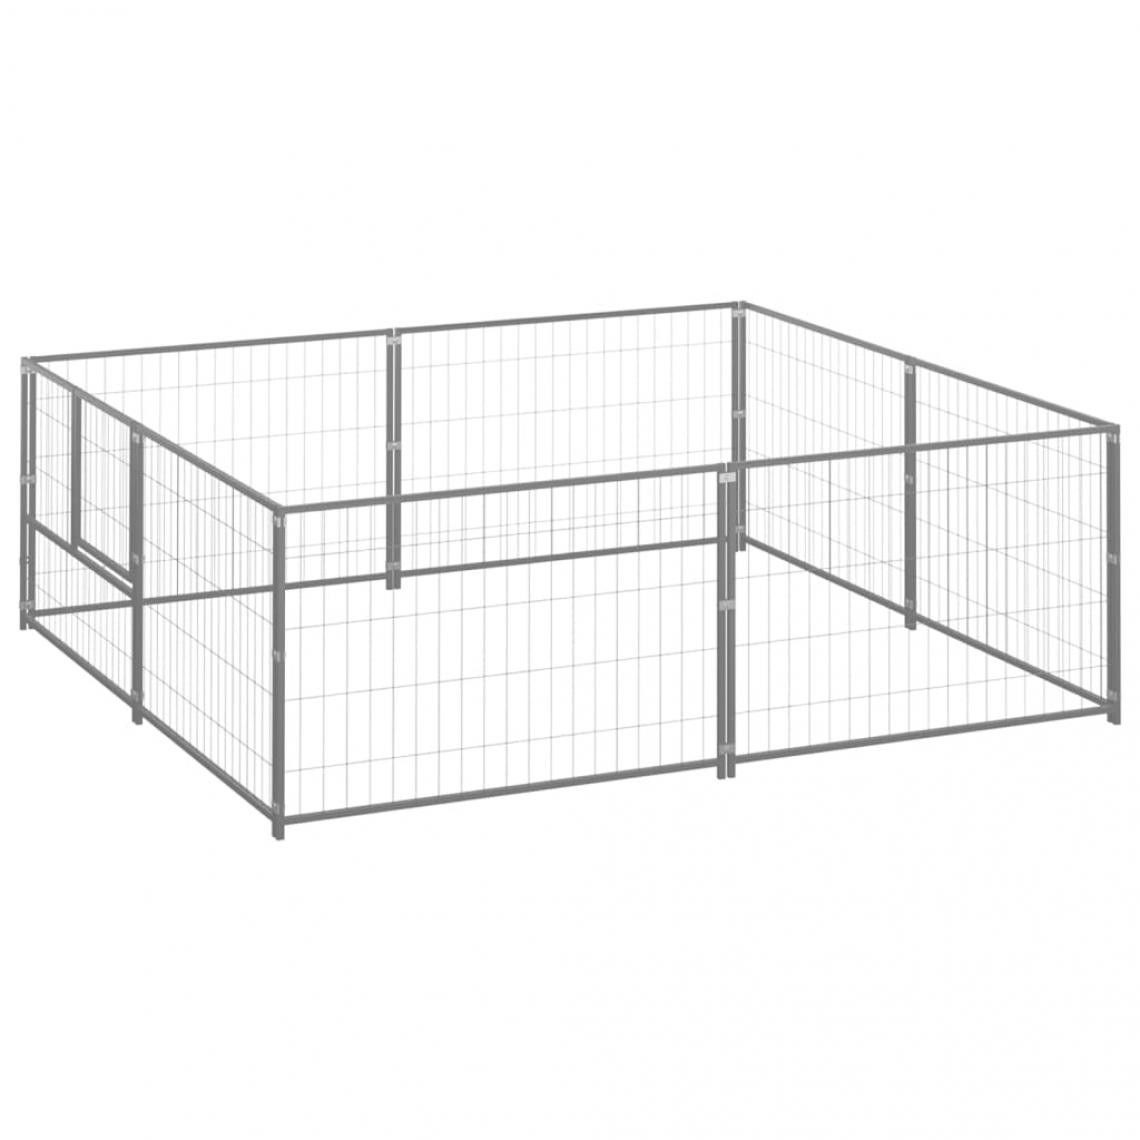 Helloshop26 - Chenil extérieur cage enclos parc animaux chien argenté 4 m² acier 02_0000276 - Clôture pour chien